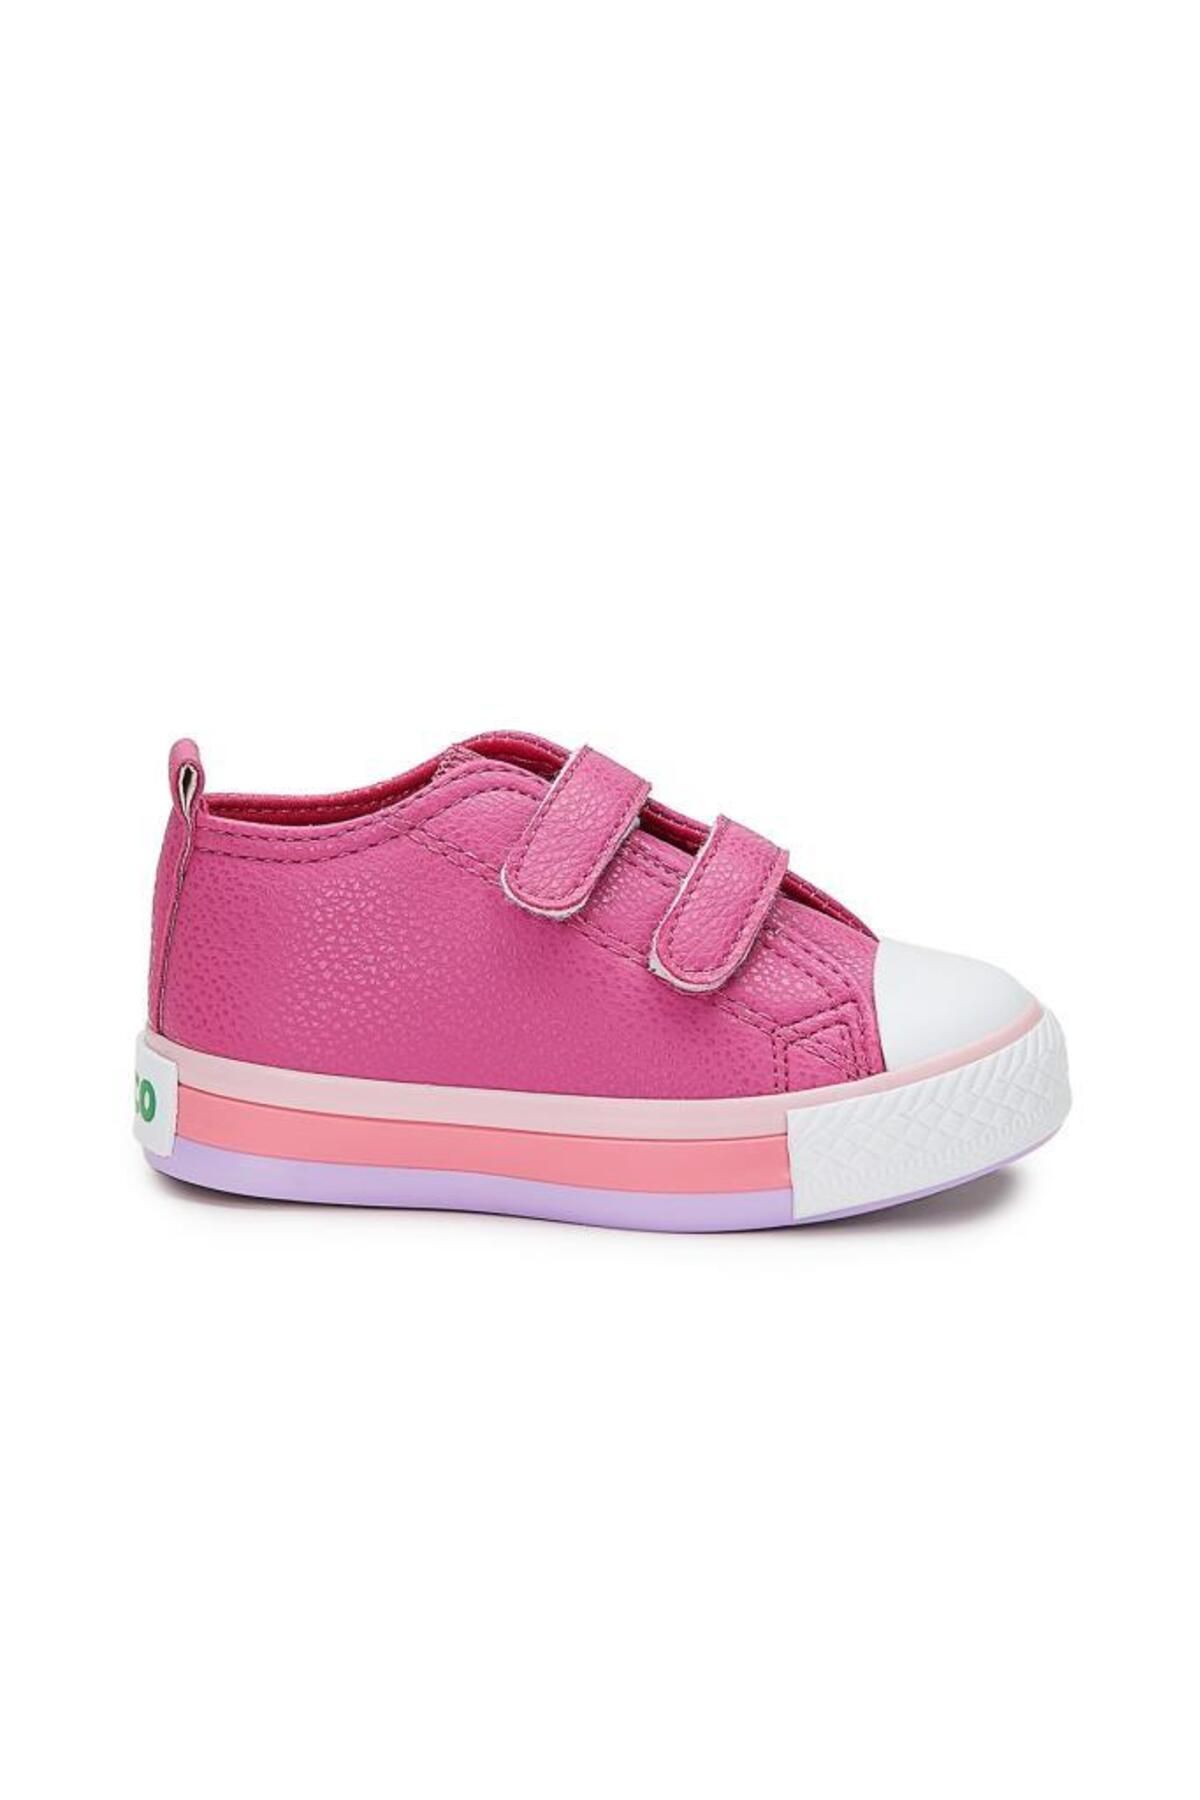 Vicco Armin Kız Çocuk Sneaker Ayakkabı Fuşya 31-35